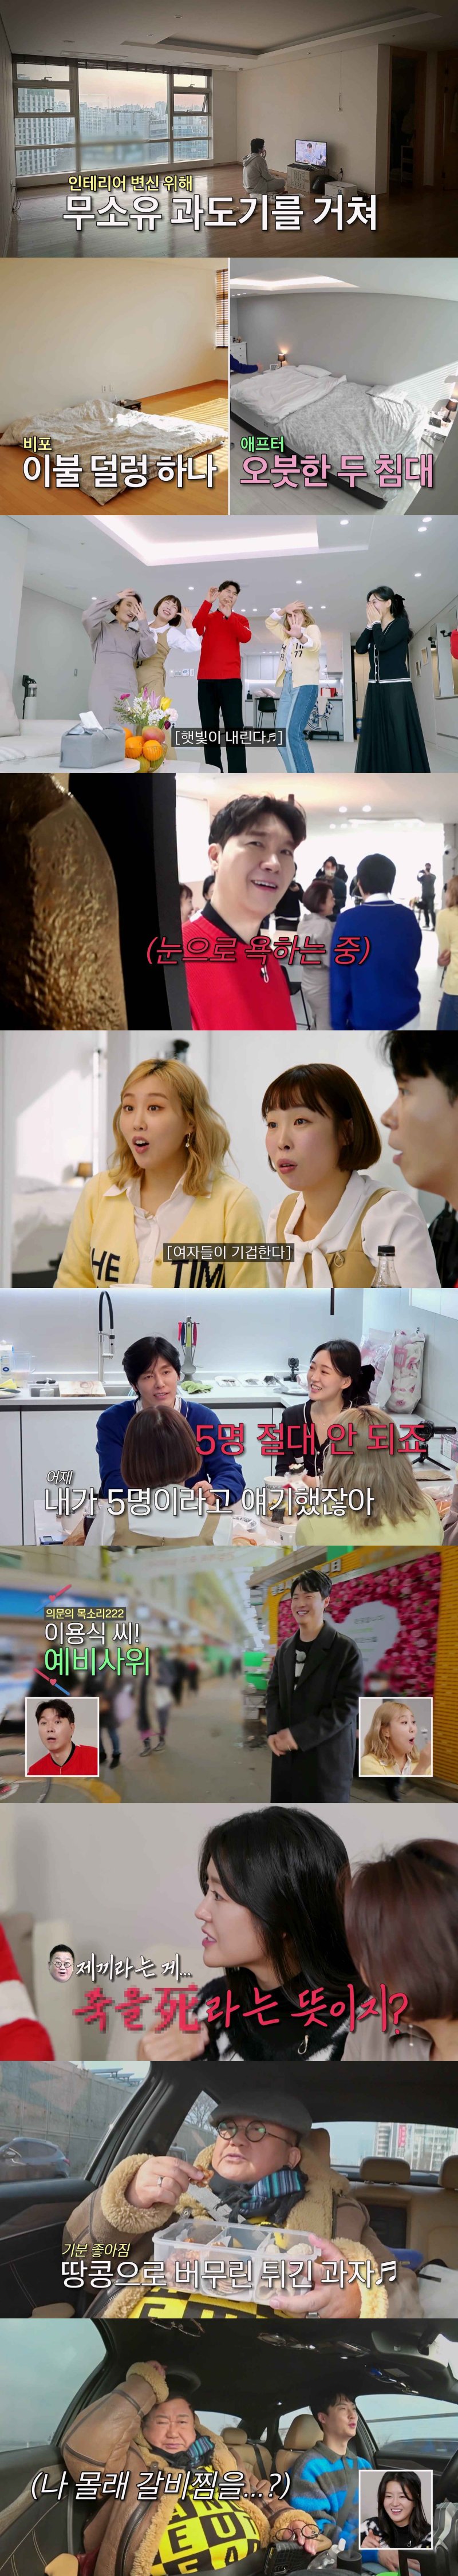 최성국 '백악관 인테리어' 신혼집 공개…"아래층에 시부모 거주"